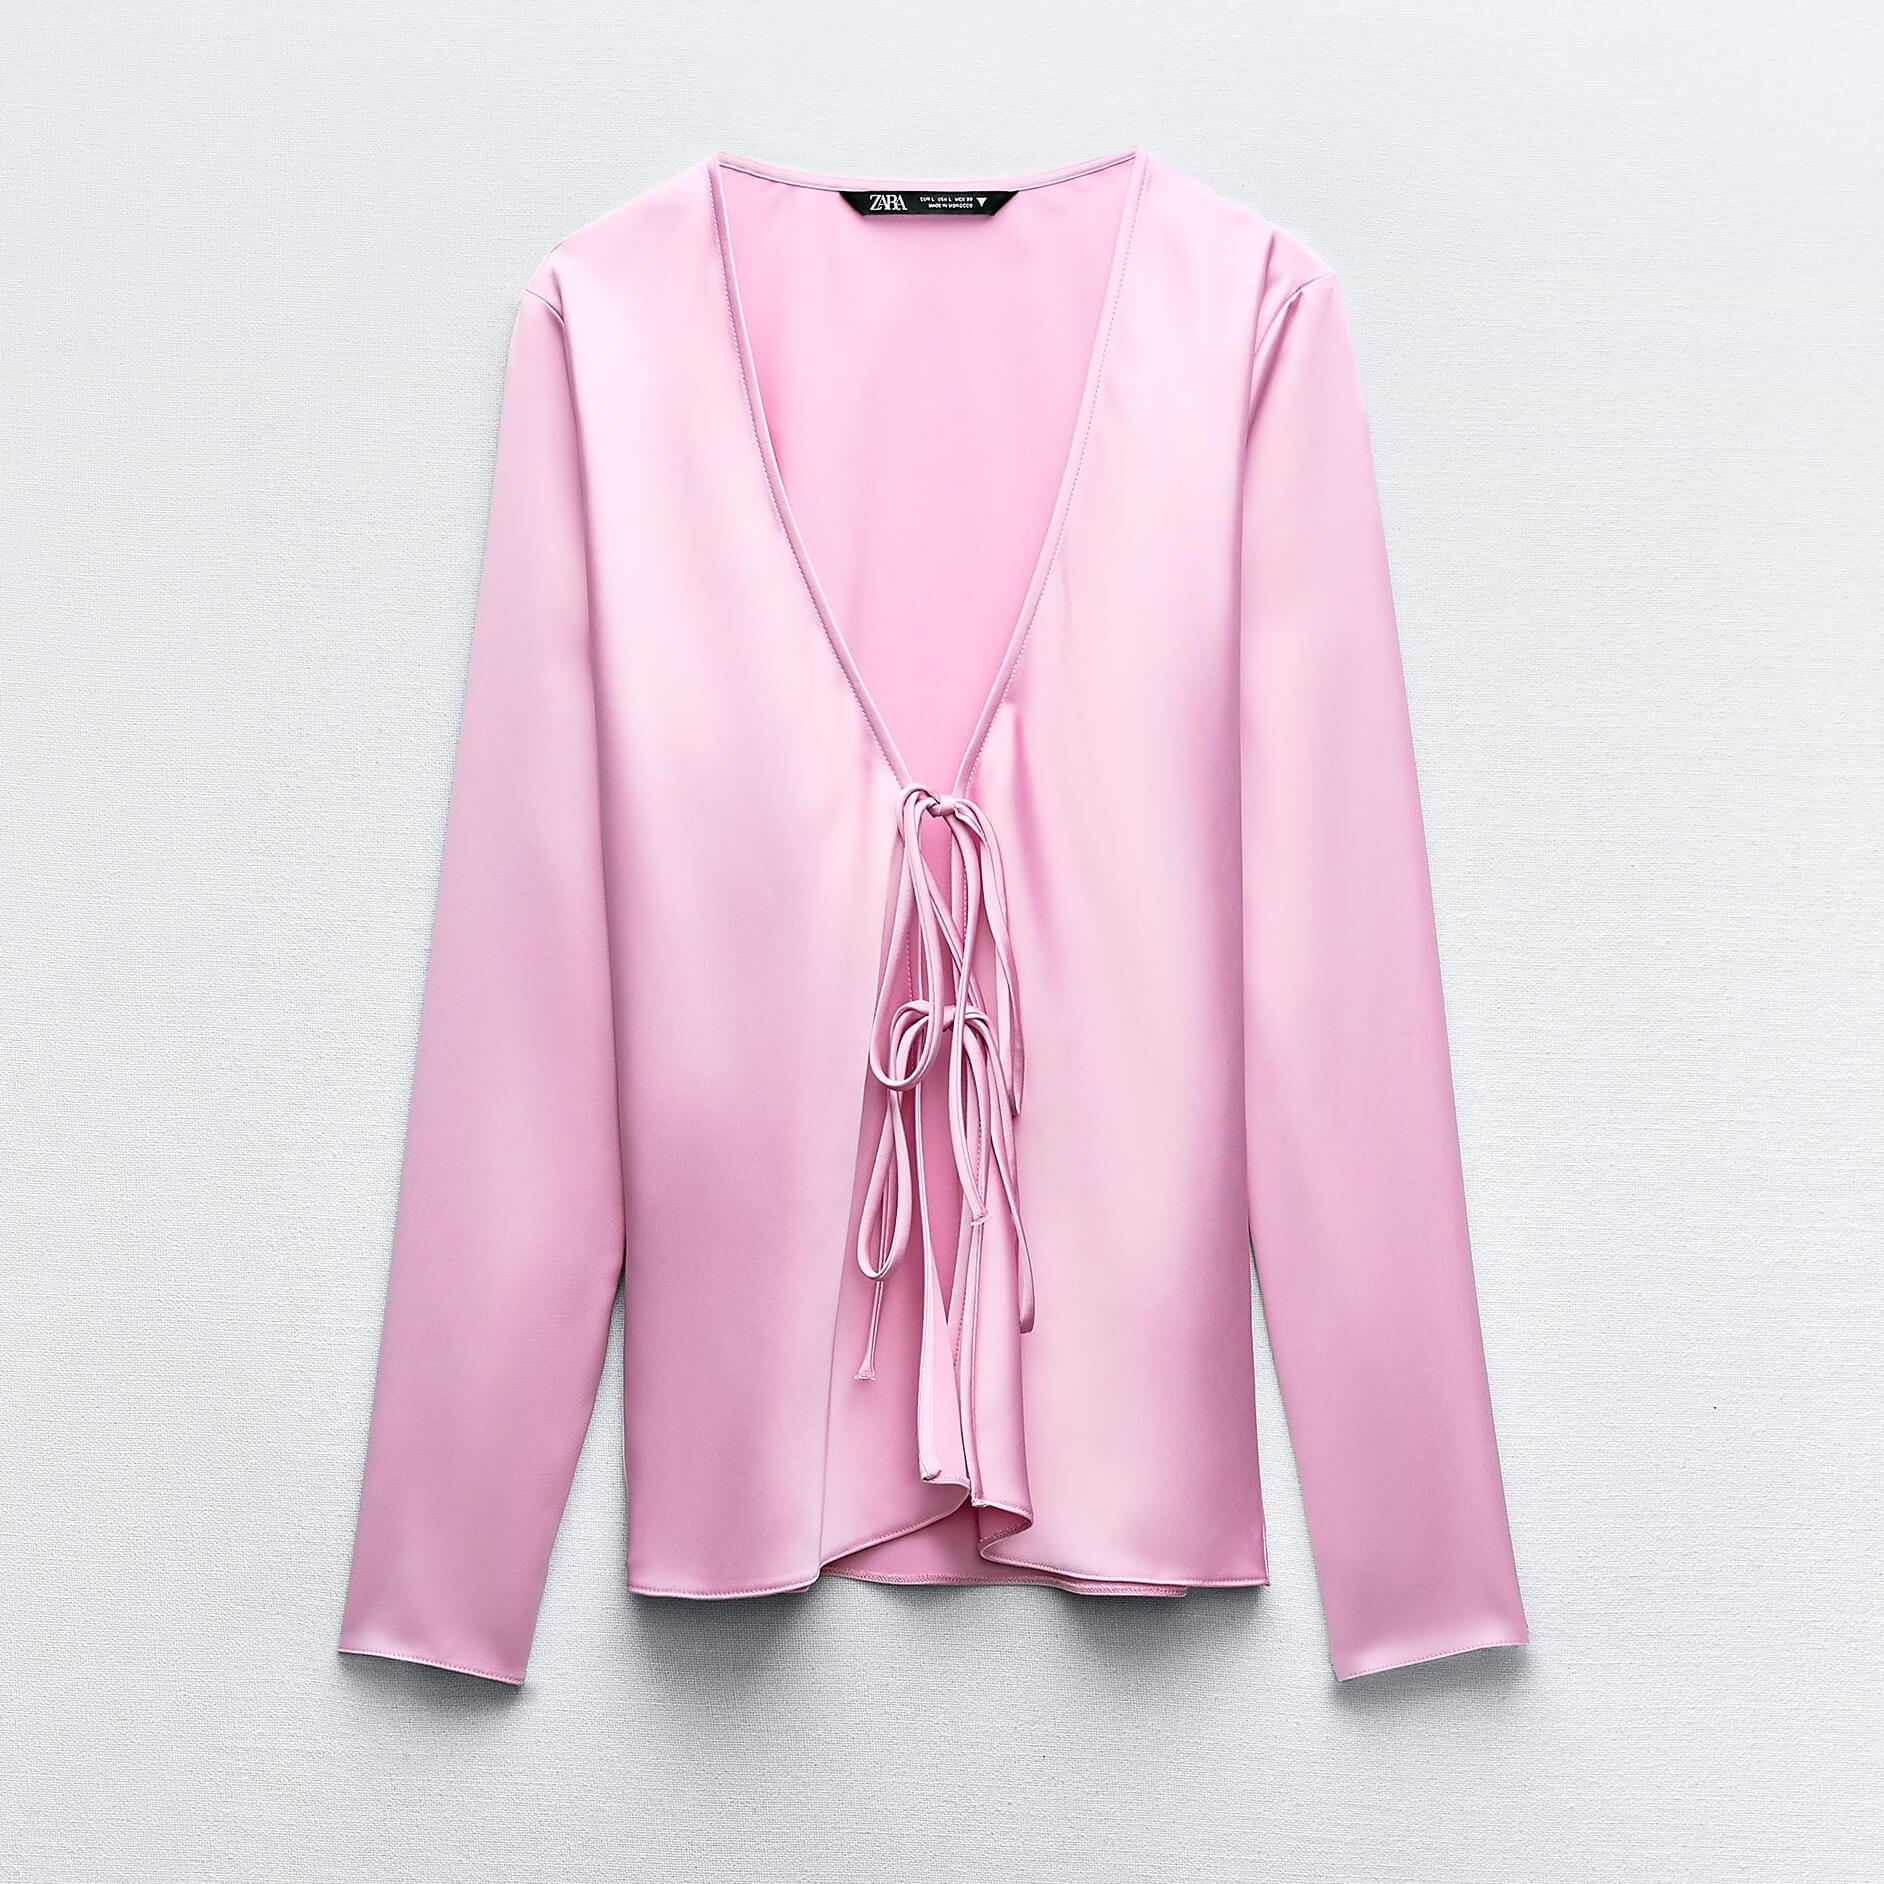 Рубашка Zara Satin With Ties, розовый рубашка zara satin with contrast tie желтовато белый